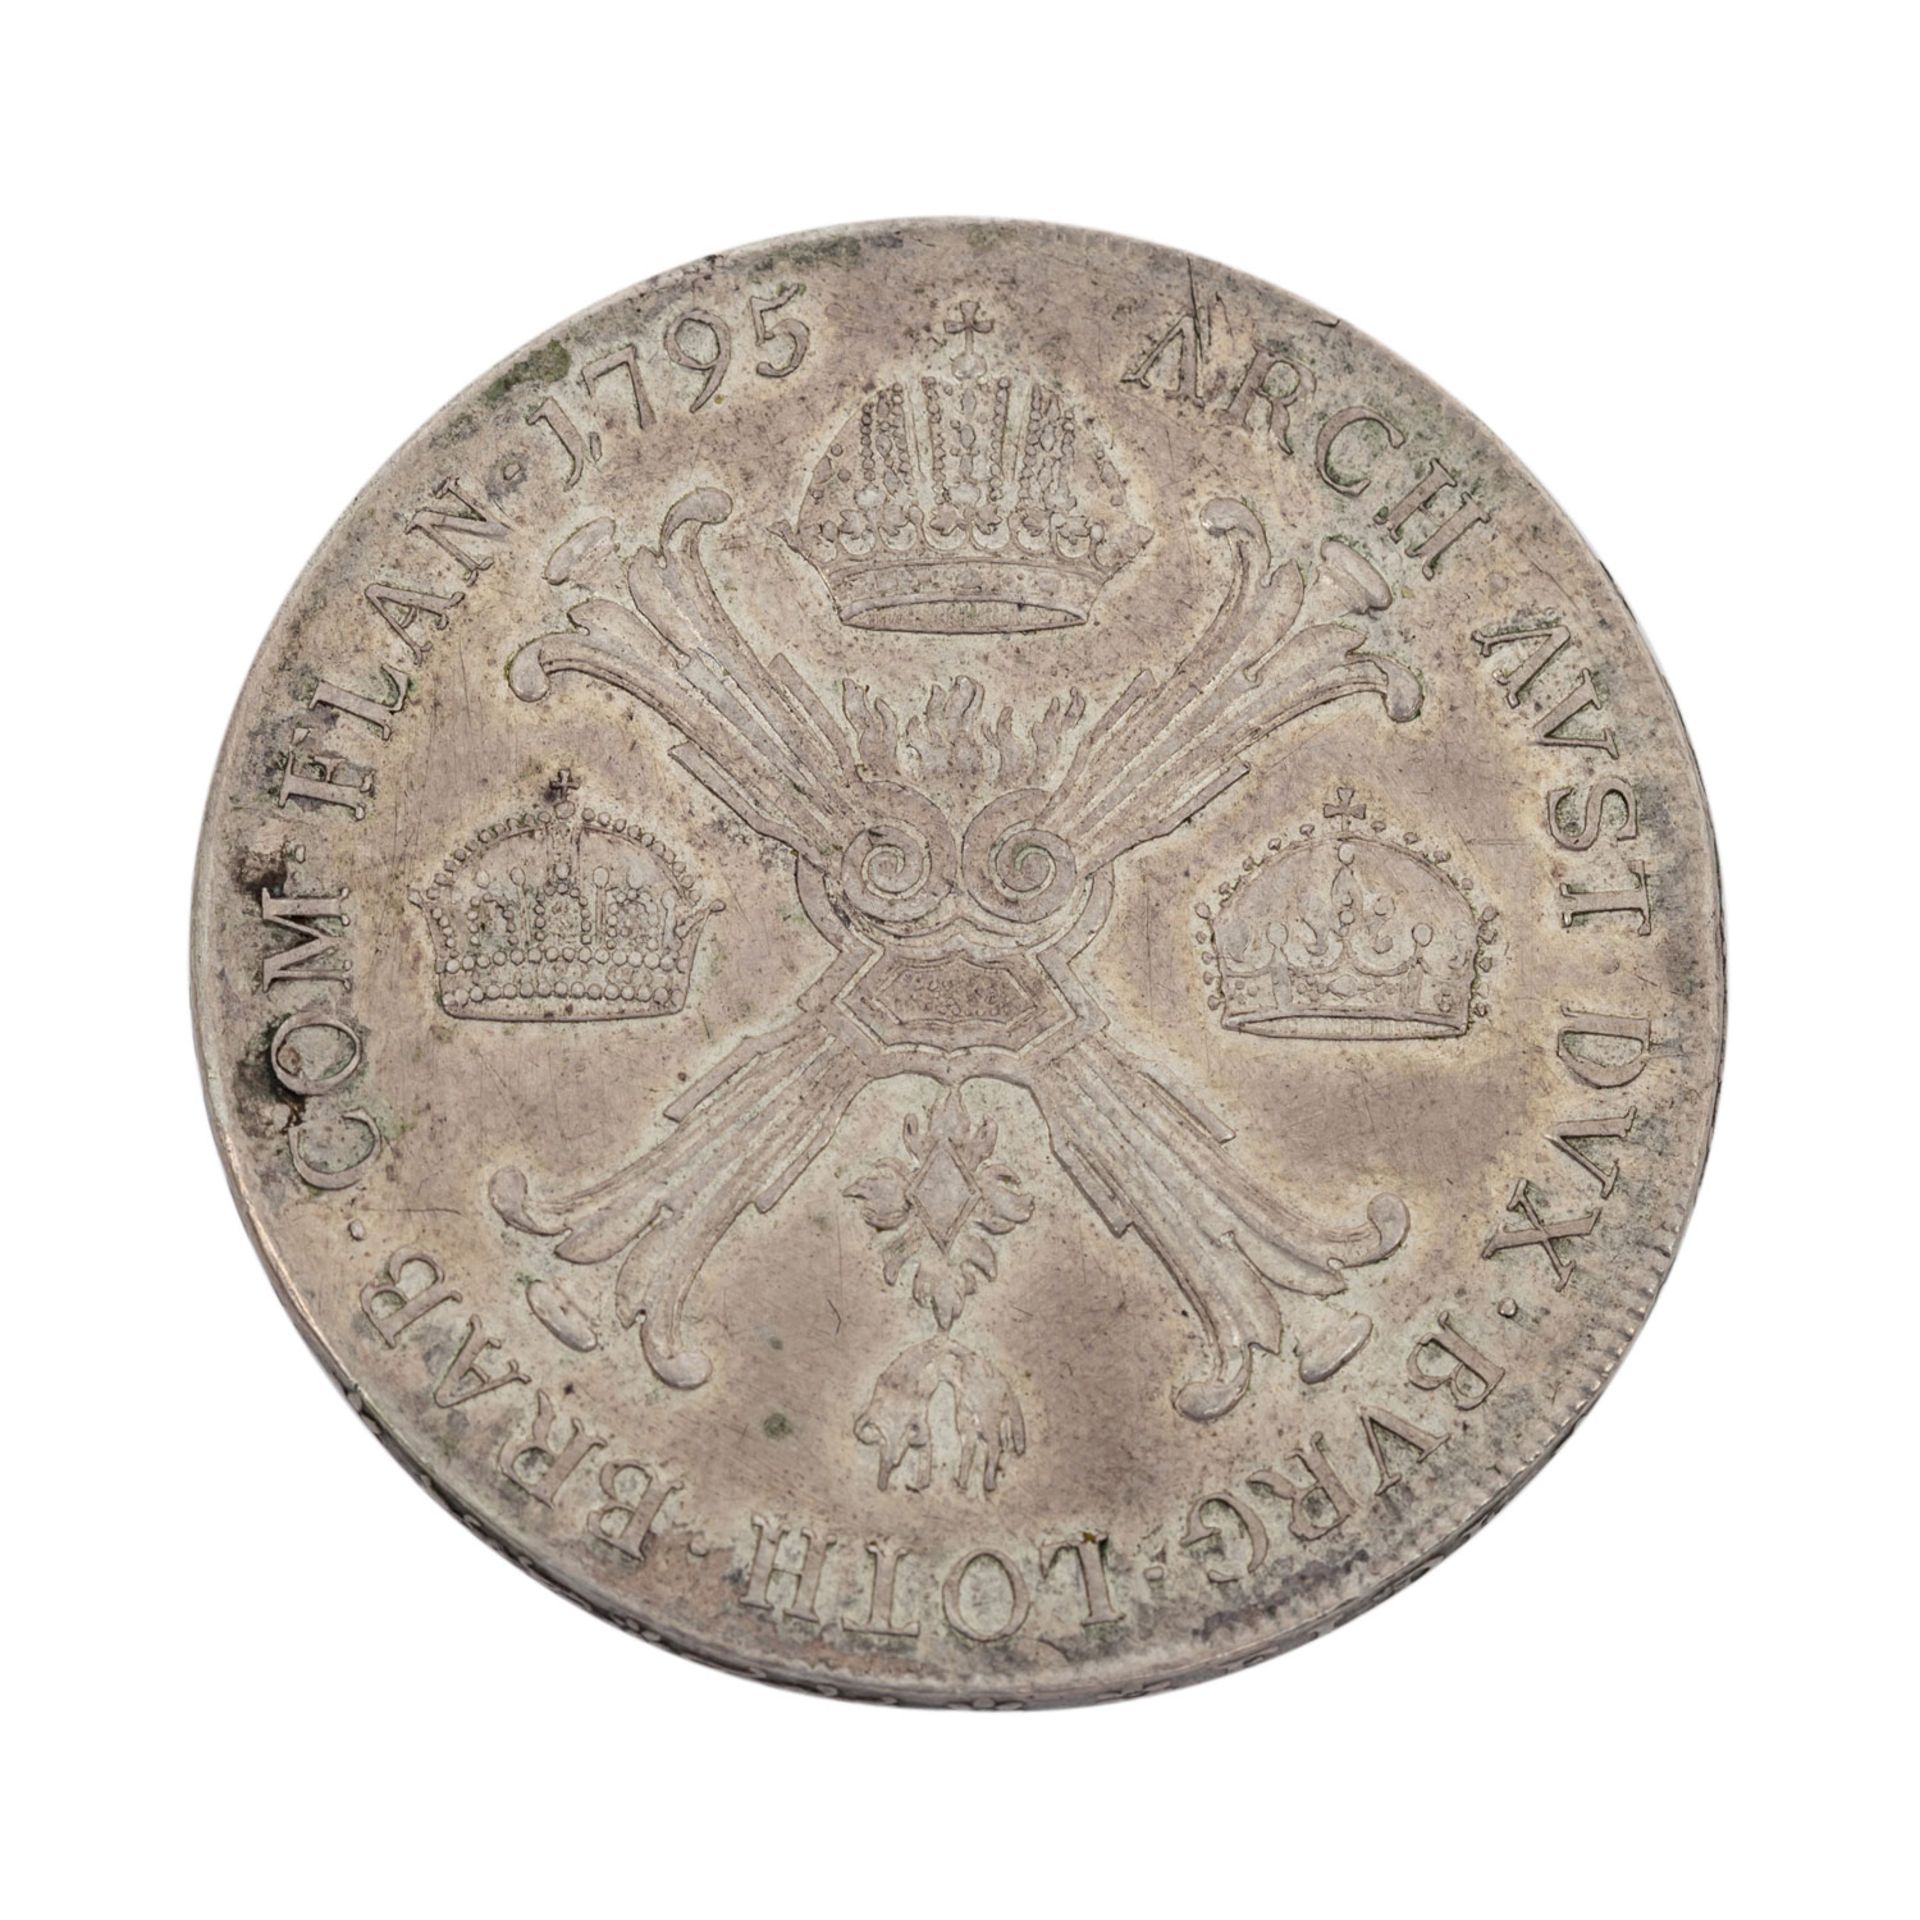 RDR - Kronentaler 1795/A, Franz II.,avers justiert, ex BW Bank, vz.avers adjus - Bild 2 aus 2